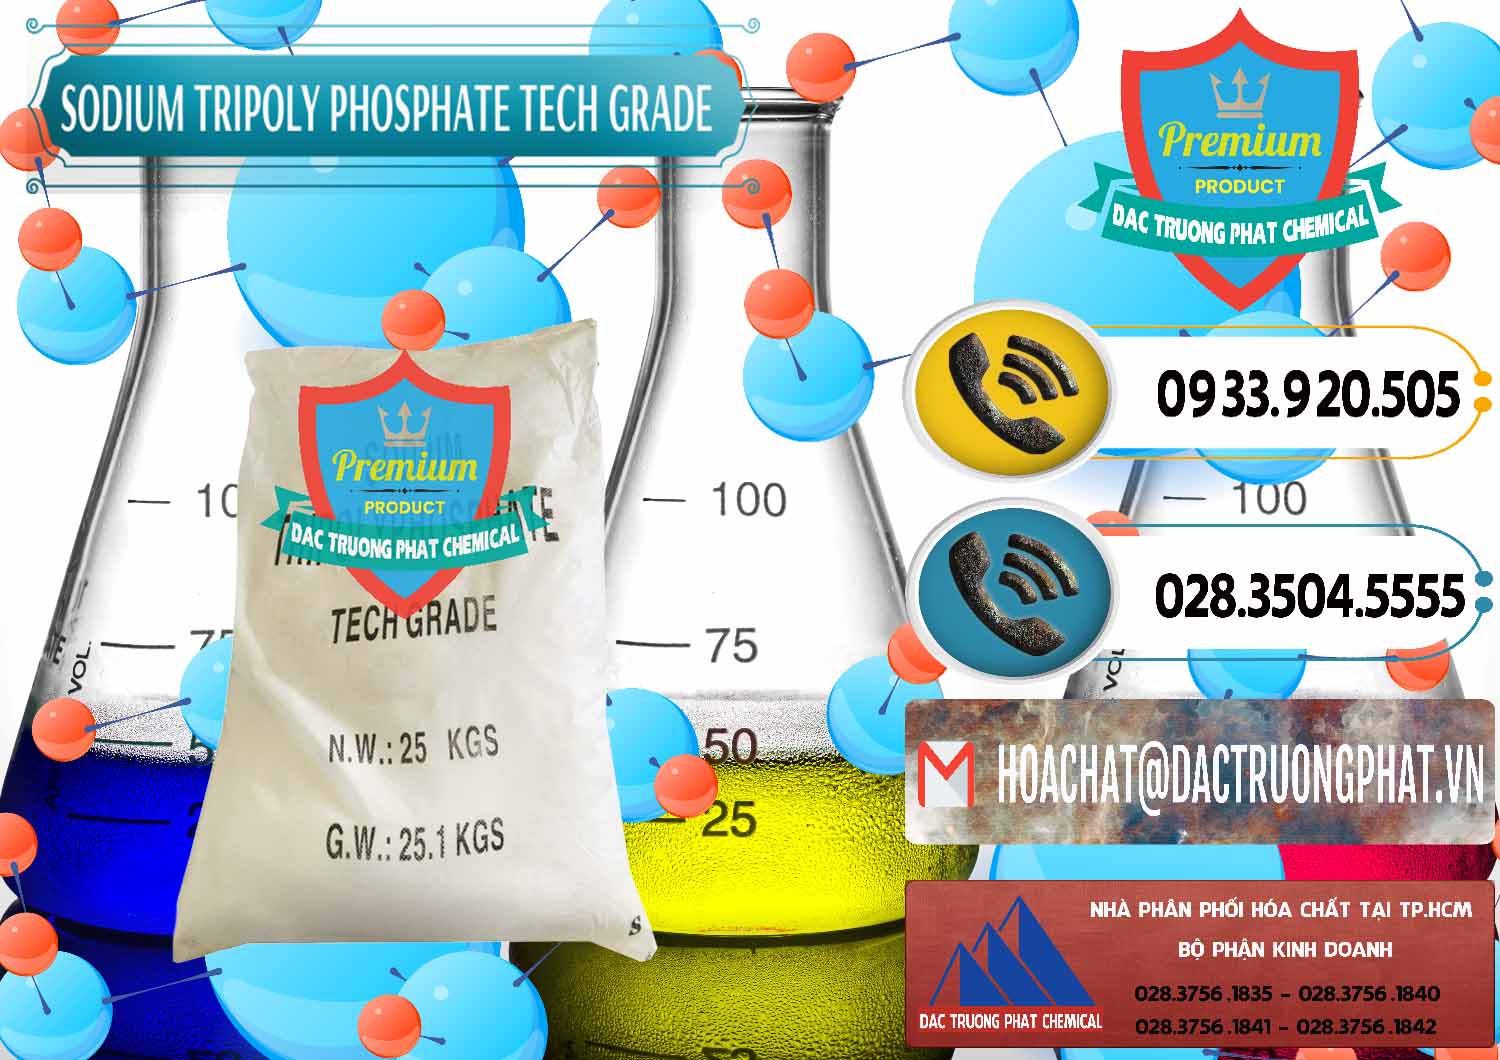 Công ty chuyên bán và cung cấp Sodium Tripoly Phosphate - STPP Tech Grade Trung Quốc China - 0453 - Phân phối _ kinh doanh hóa chất tại TP.HCM - hoachatdetnhuom.vn